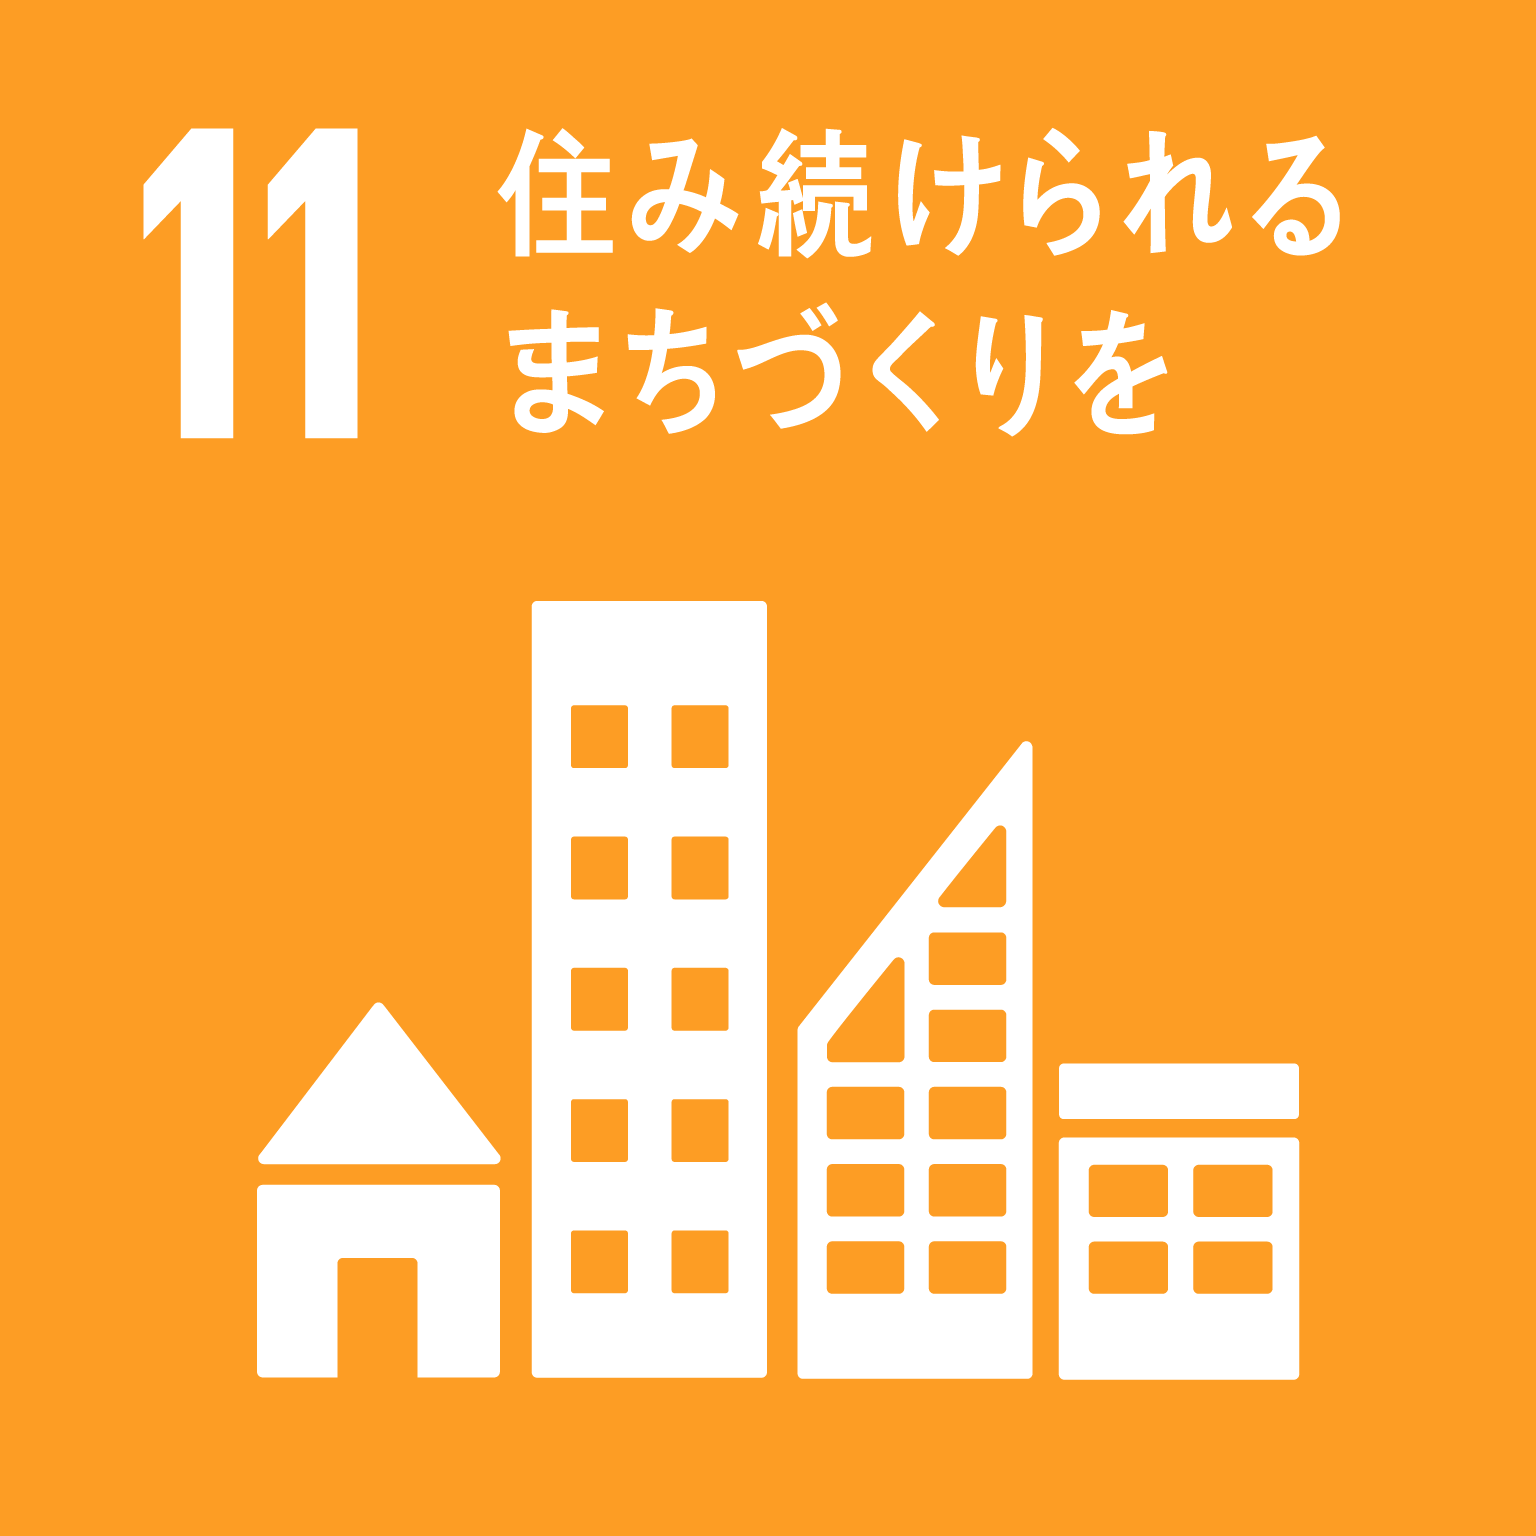 「11.住み続けられるまちづくりを」の文字と目標11のロゴ